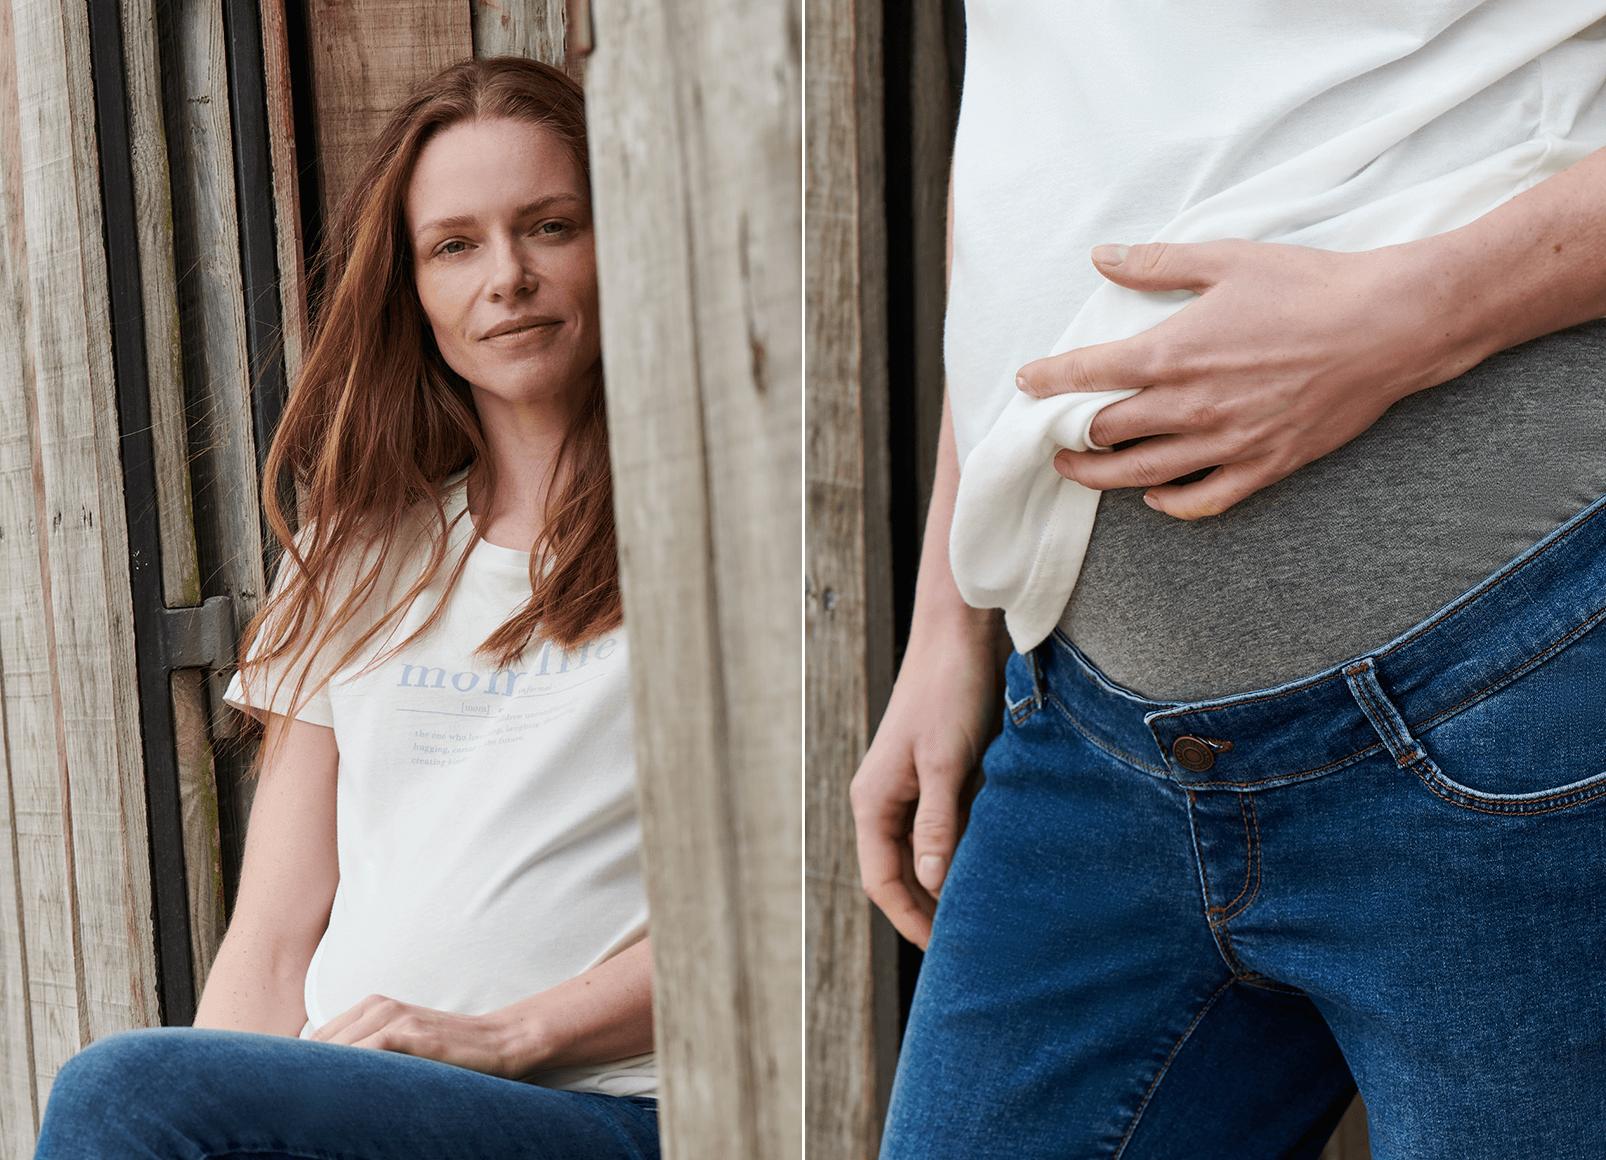 Dżinsy ciążowe i biała koszula – wygodna stylizacja gwarantowana.
                                 Spodnie ciążowe z podtrzymującym górnym pasem zapewniającym dodatkowy komfort. 